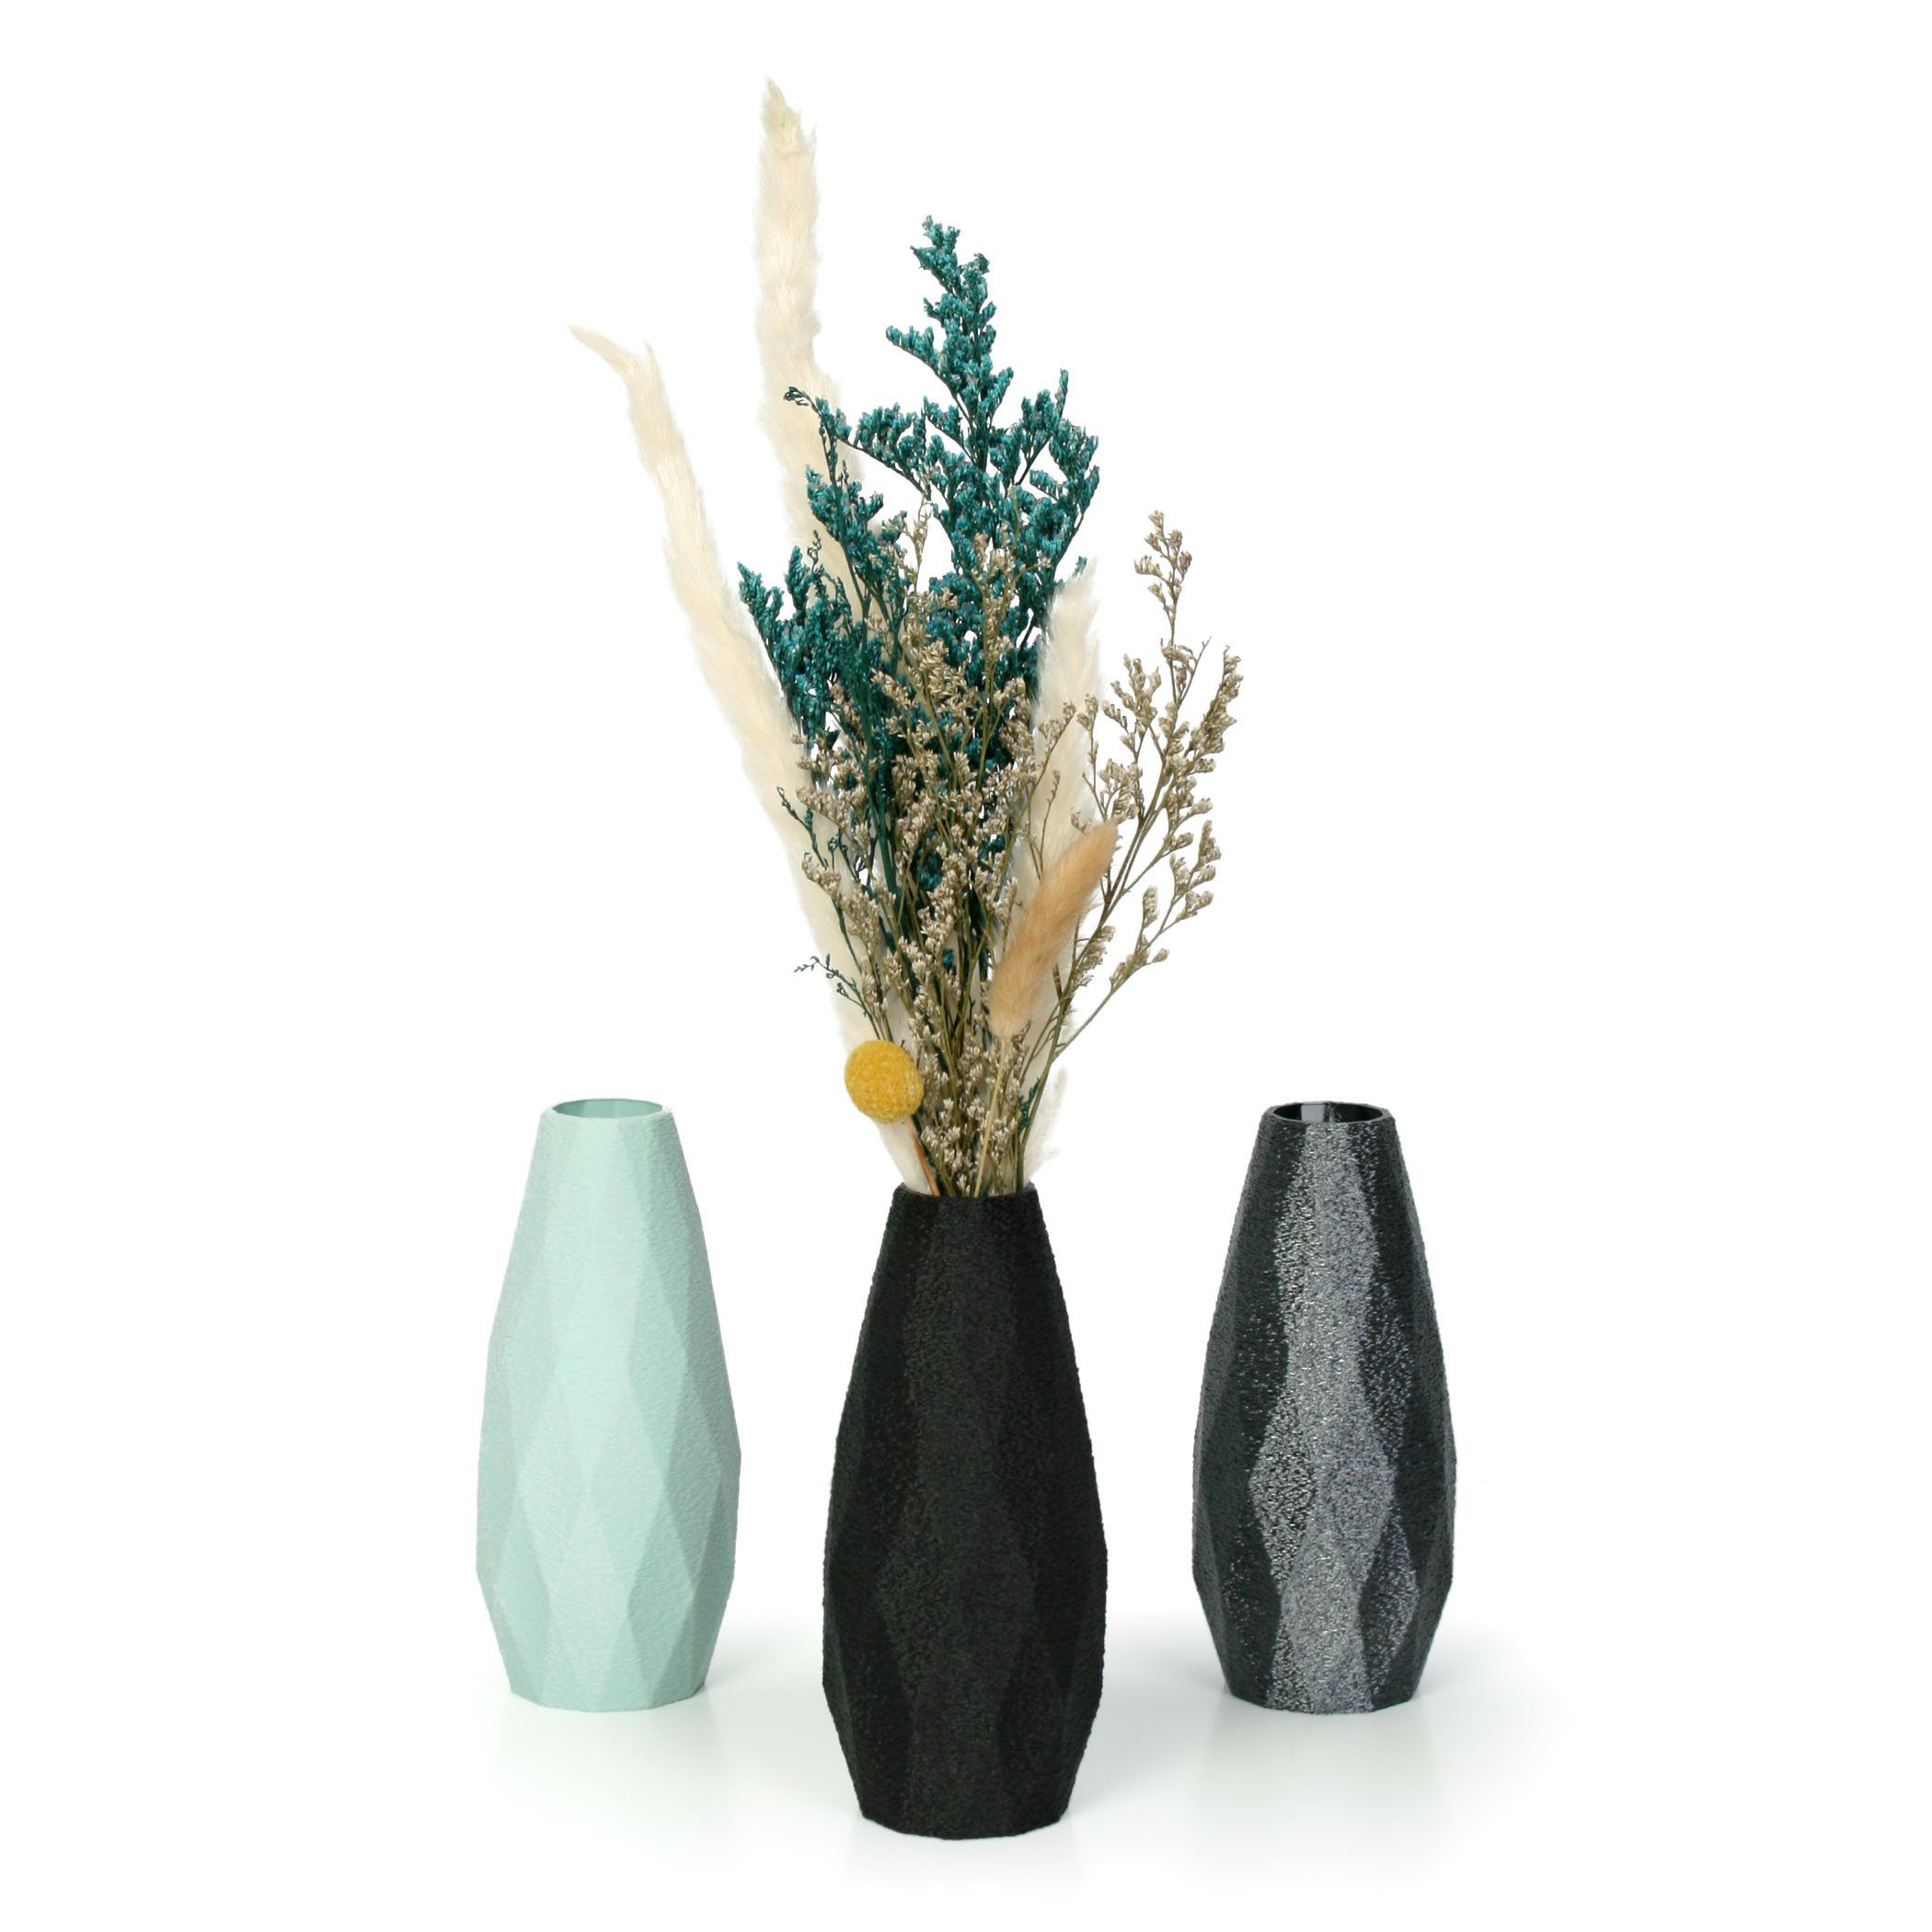 Designer Feder Rohstoffen; & Bio-Kunststoff, Blumenvase nachwachsenden Dekorative Vase wasserdicht Dekovase bruchsicher aus Violet Kreative aus –